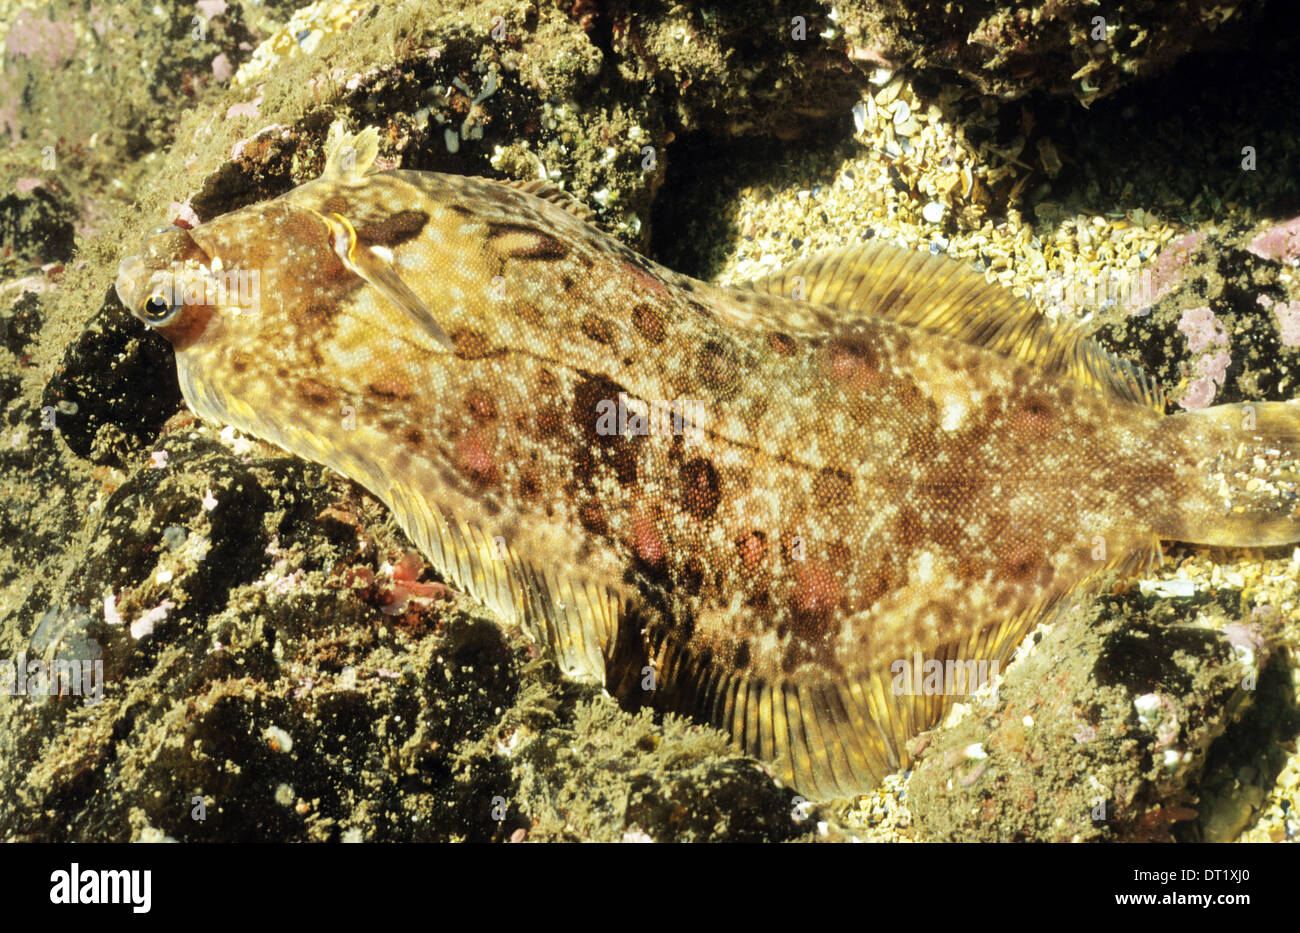 Limande sole (Microstomus kitt) sous l'eau à St Abbs réserve marine. Incroyable la vie sous-marine au large de la côte britannique. Banque D'Images